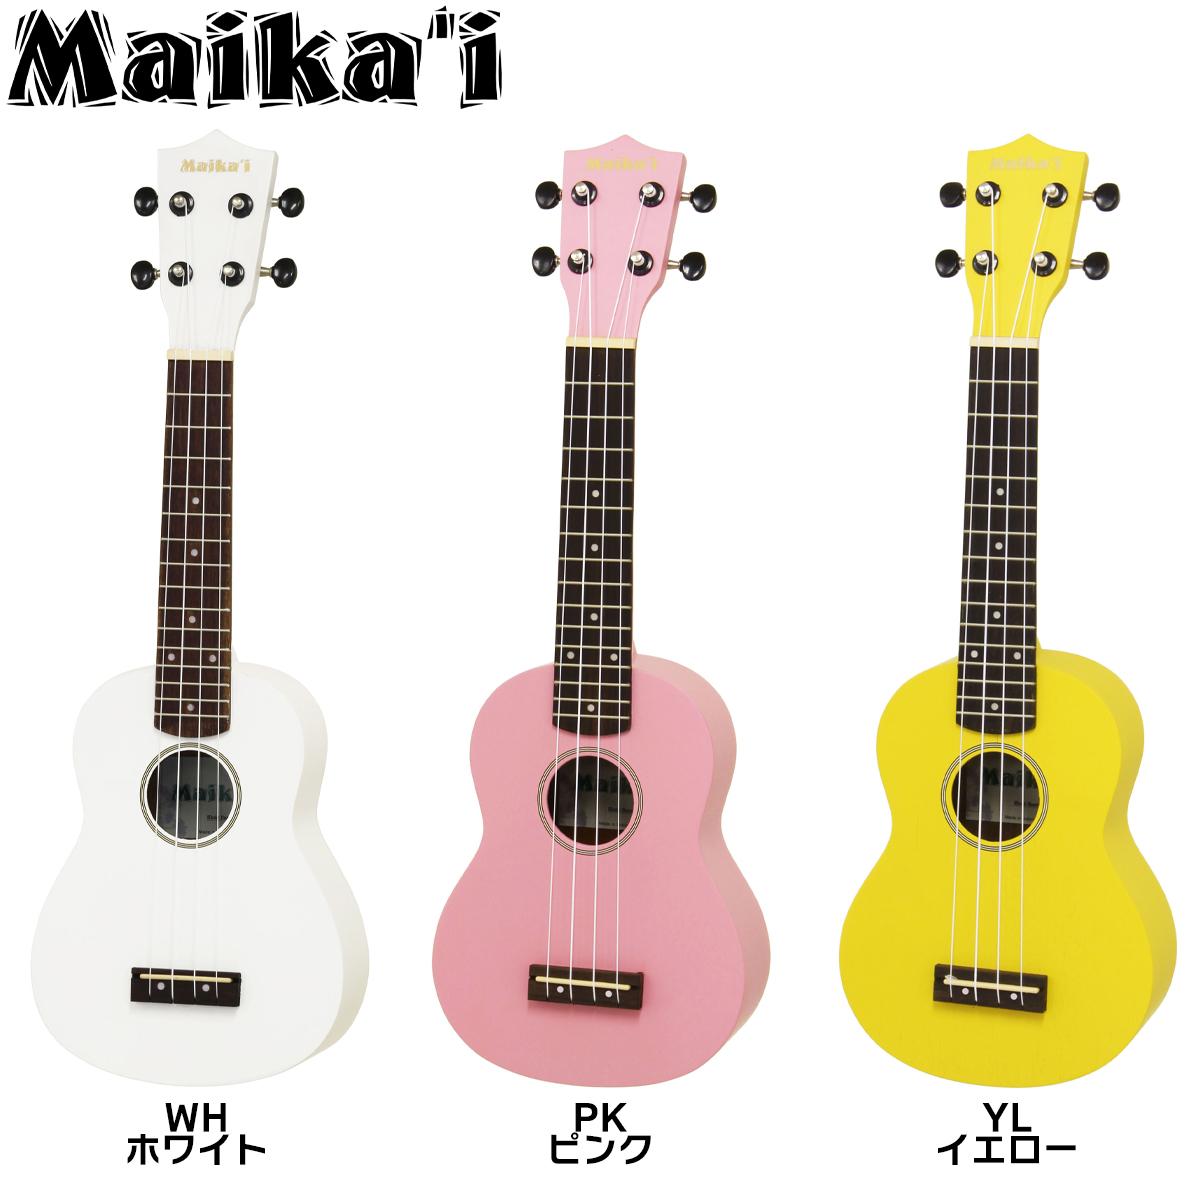 ( можно выбрать 12 цвет!) Maika*i mica iMKU-1 сопрано укулеле с футляром механизм колок specification начинающий предназначенный Maikai Aria ARIA MKU1